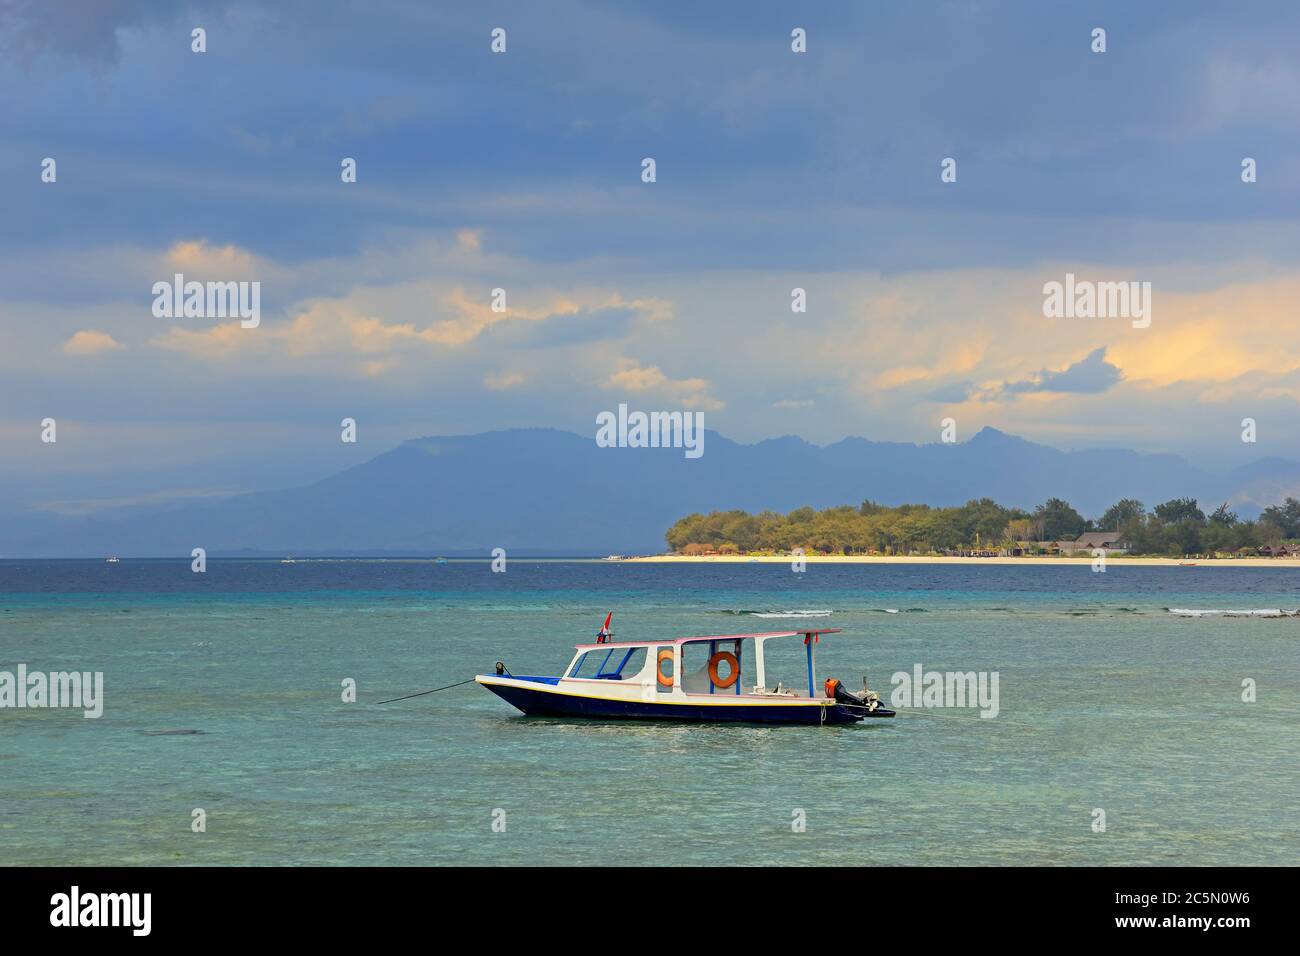 Isola tropicale indonesiana panoramica con barca ancorata contro un cielo scuro con nuvole Foto Stock